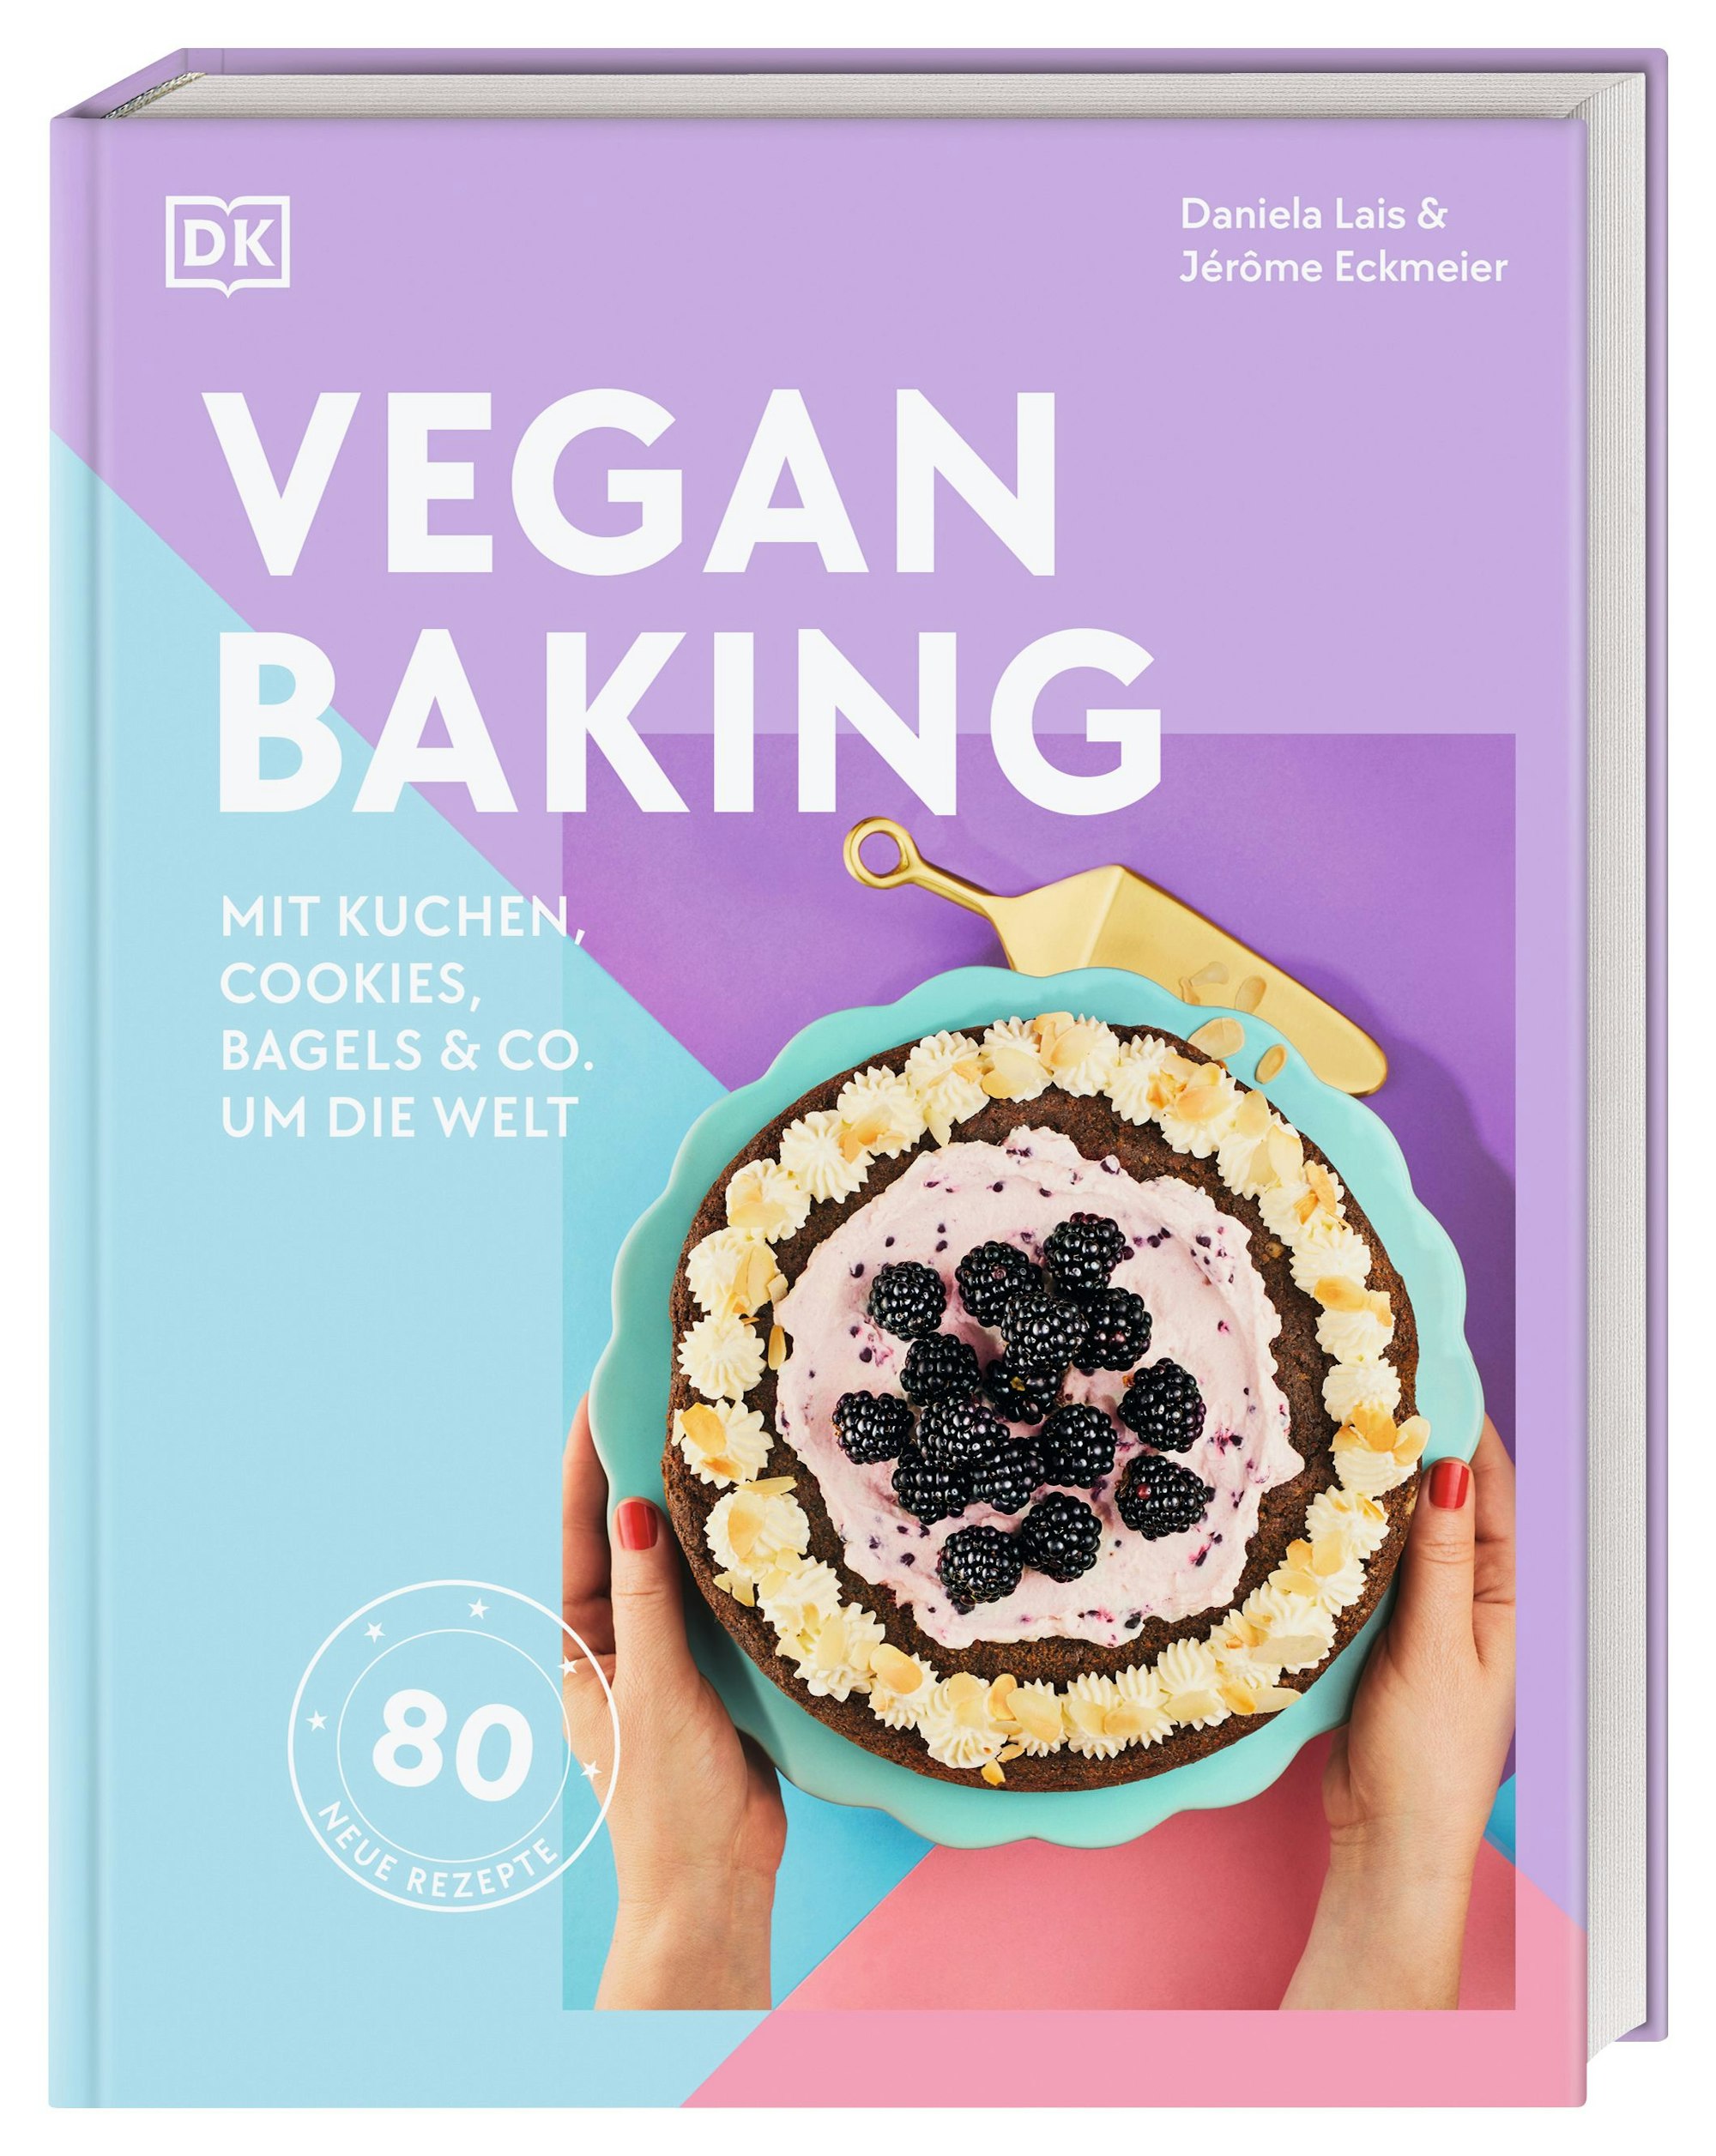 Das Buchcover von „Vegan Baking“ von Daniela Lais & Jérome Eckmeier, erschienen im DK Verlag